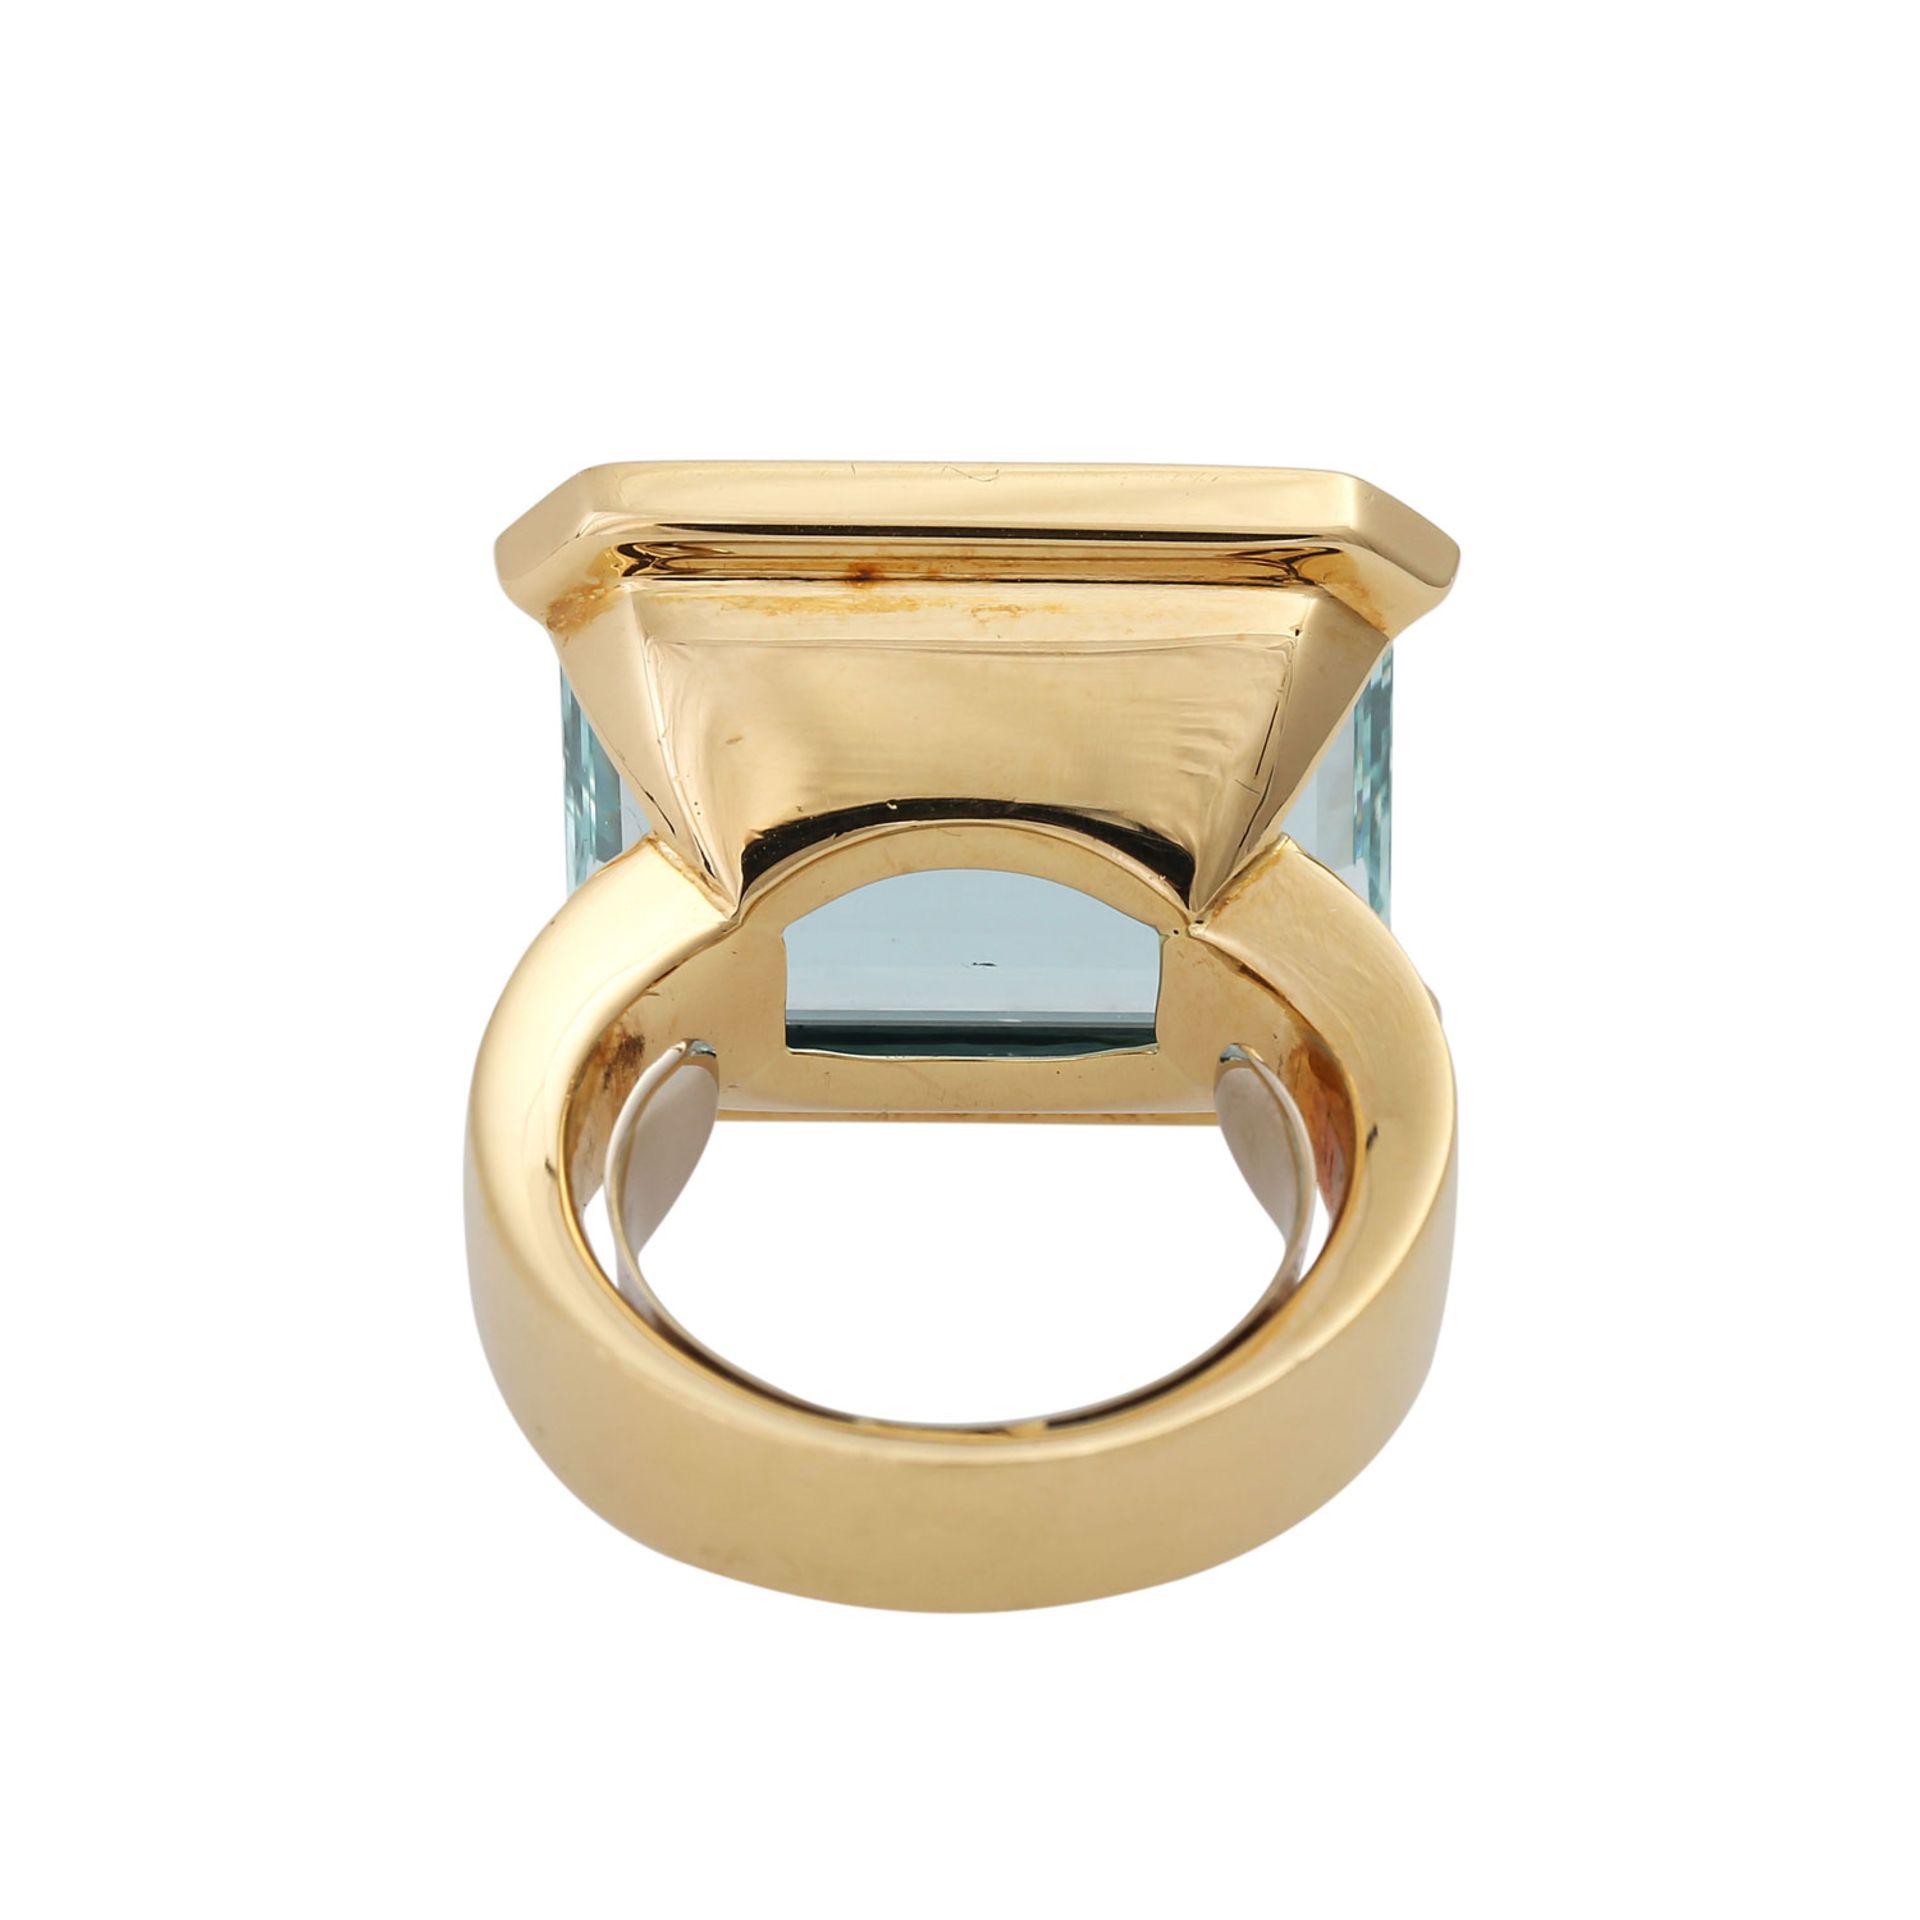 Ring mit Aquamarinca. 20x15 mm sowie 30 Brill. zus. ca. 0,3 ct, gute Farbe u. Reinheit, GG 18K. - Bild 4 aus 5